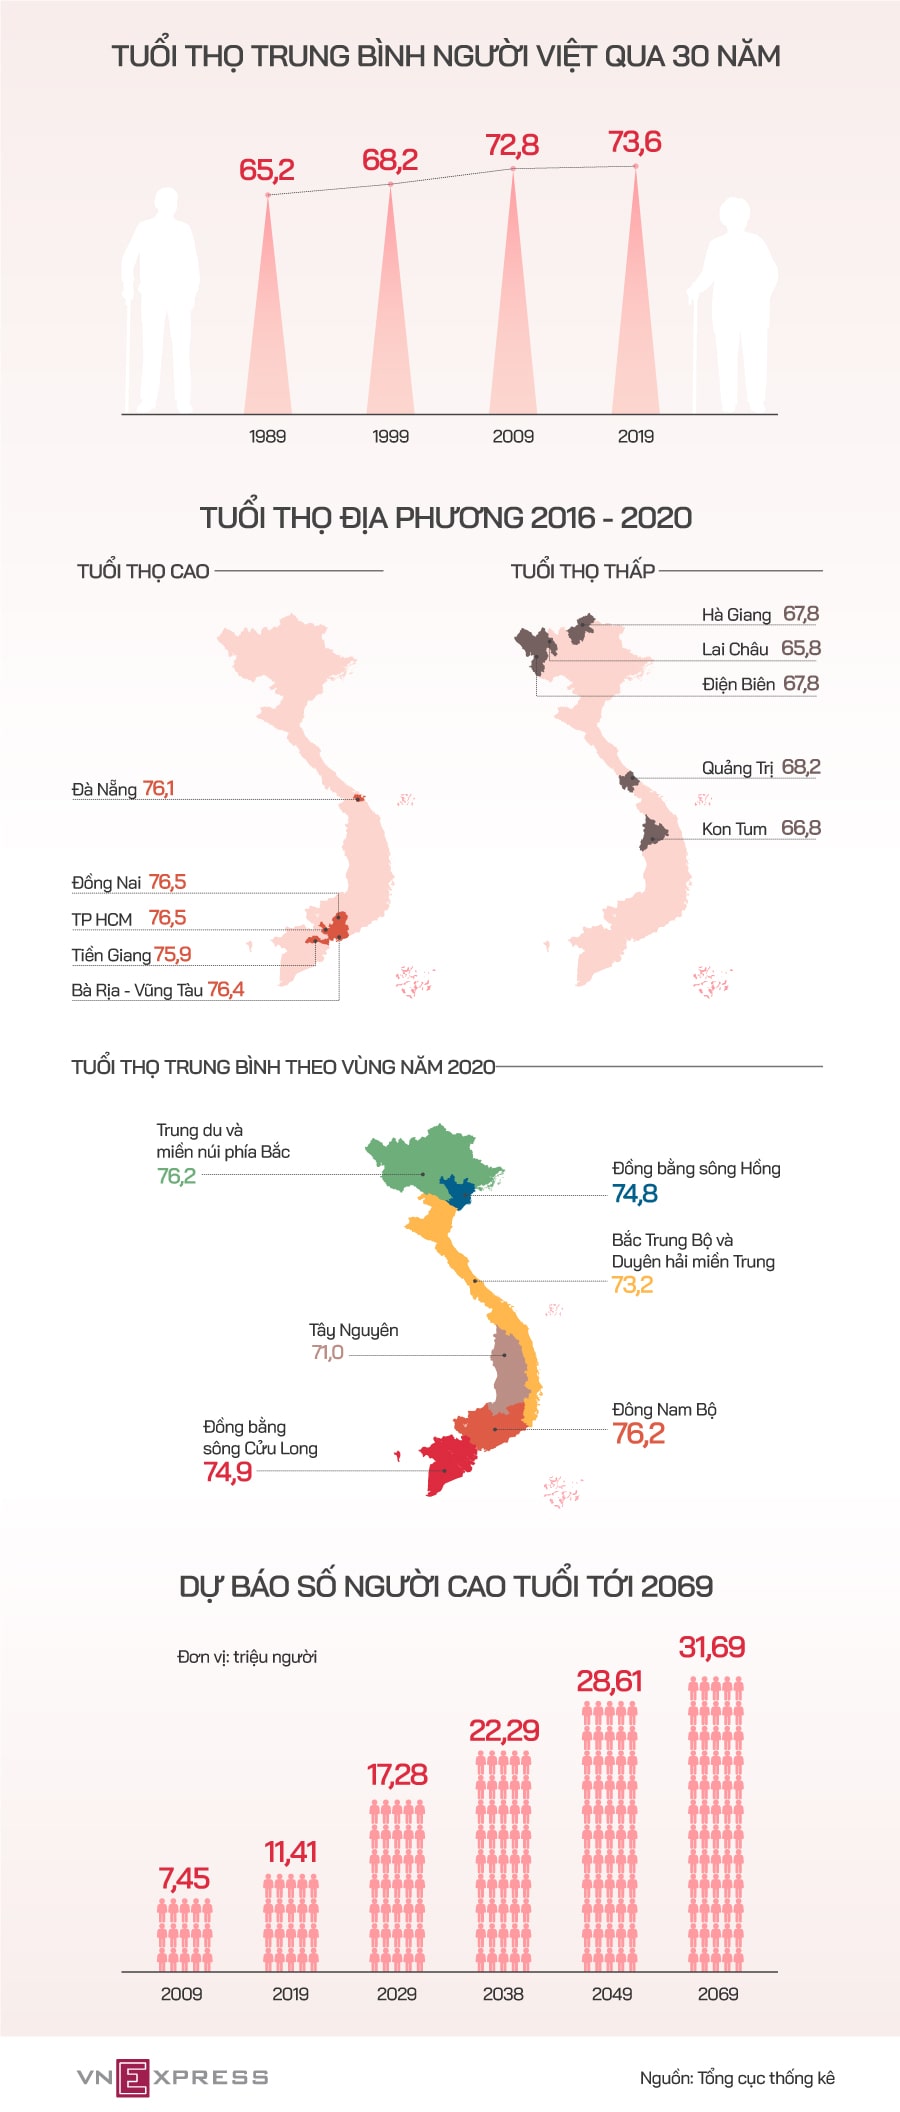 Tuổi thọ người Việt 30 năm qua